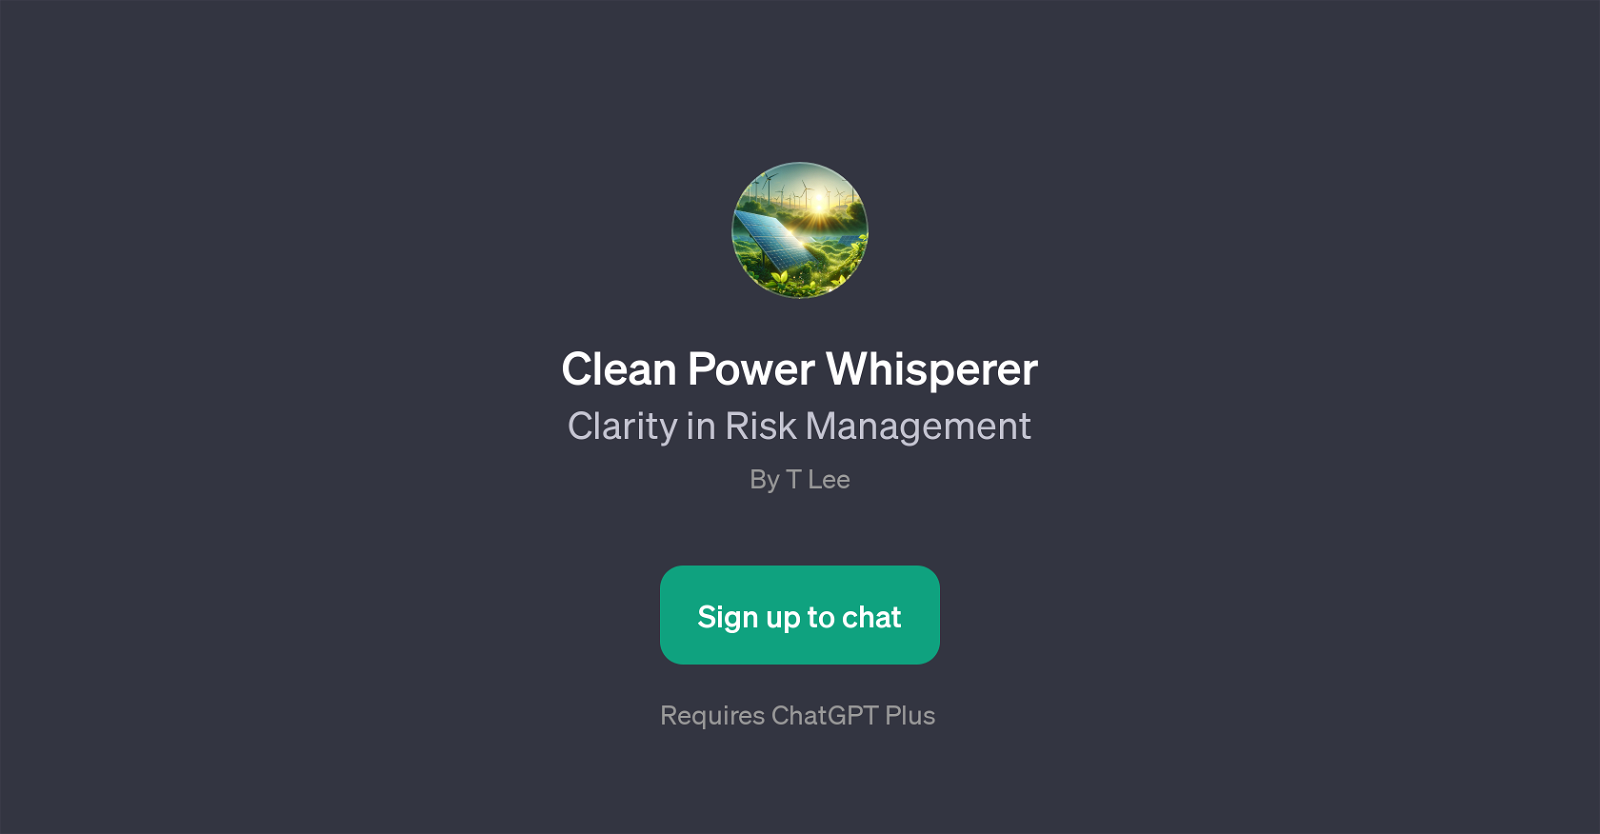 Clean Power Whisperer website